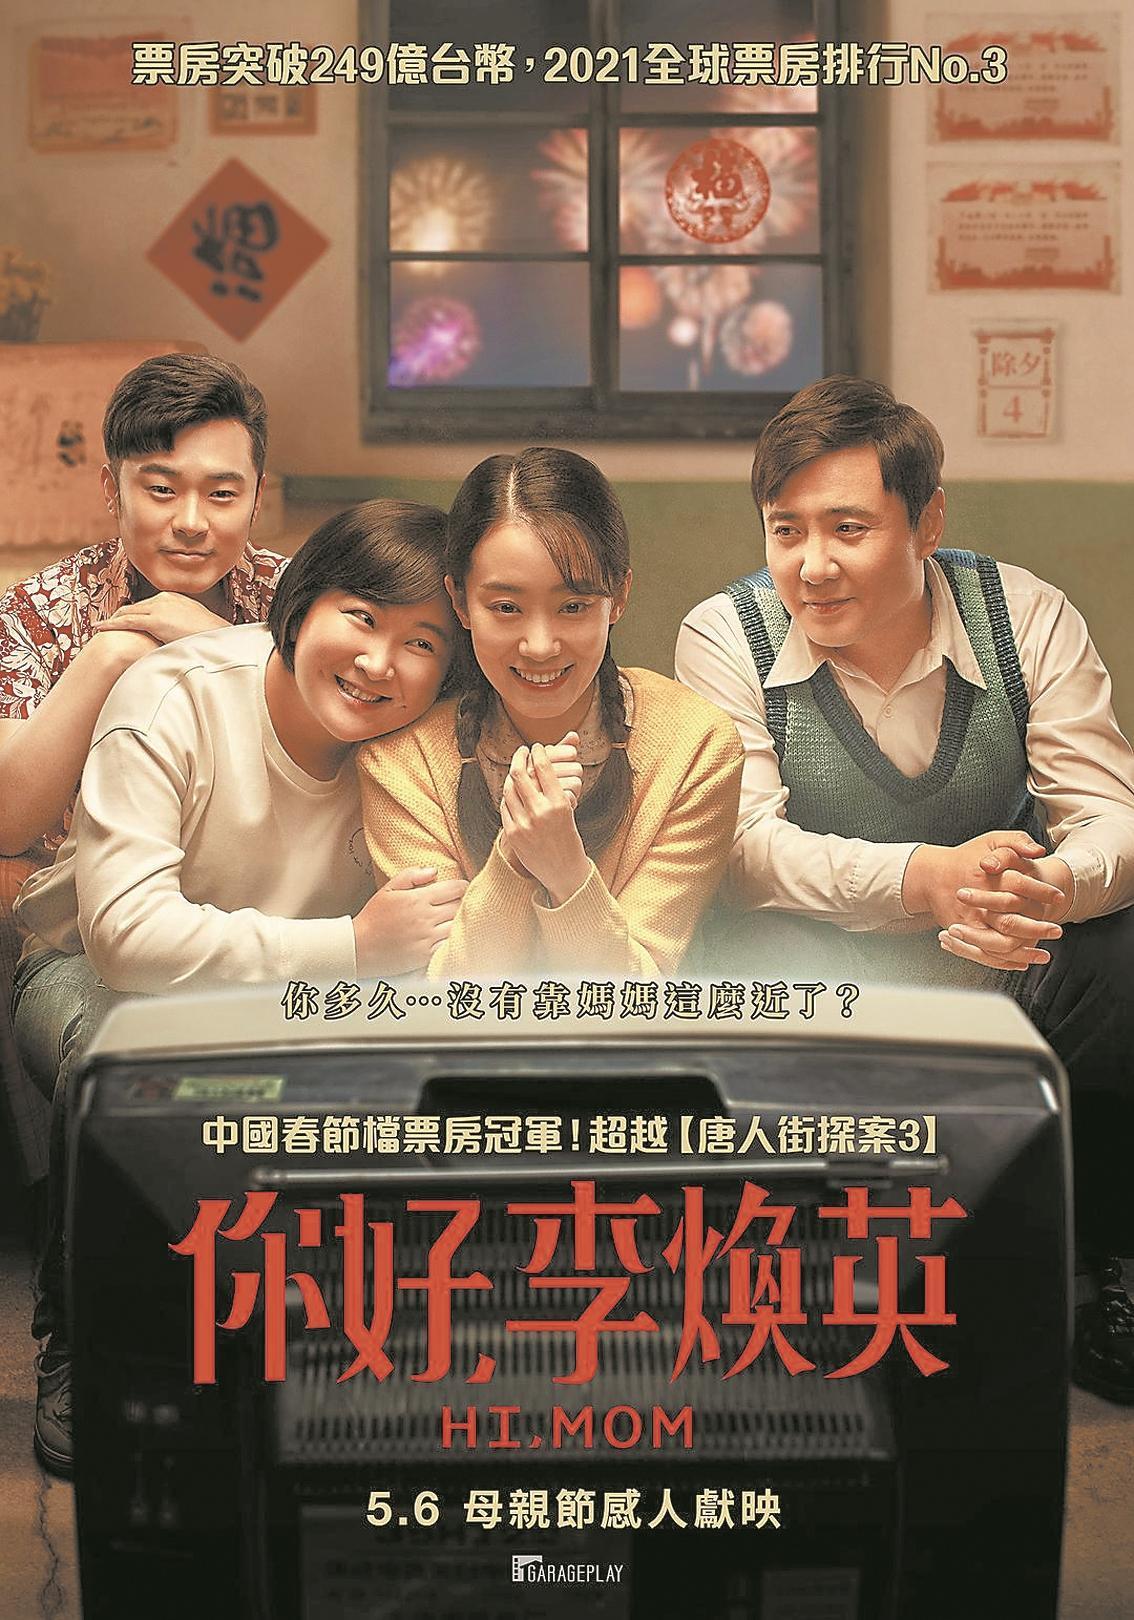 《你好,李焕英》台湾版海报由贾玲自导自演,张小斐,沈腾等主演的电影